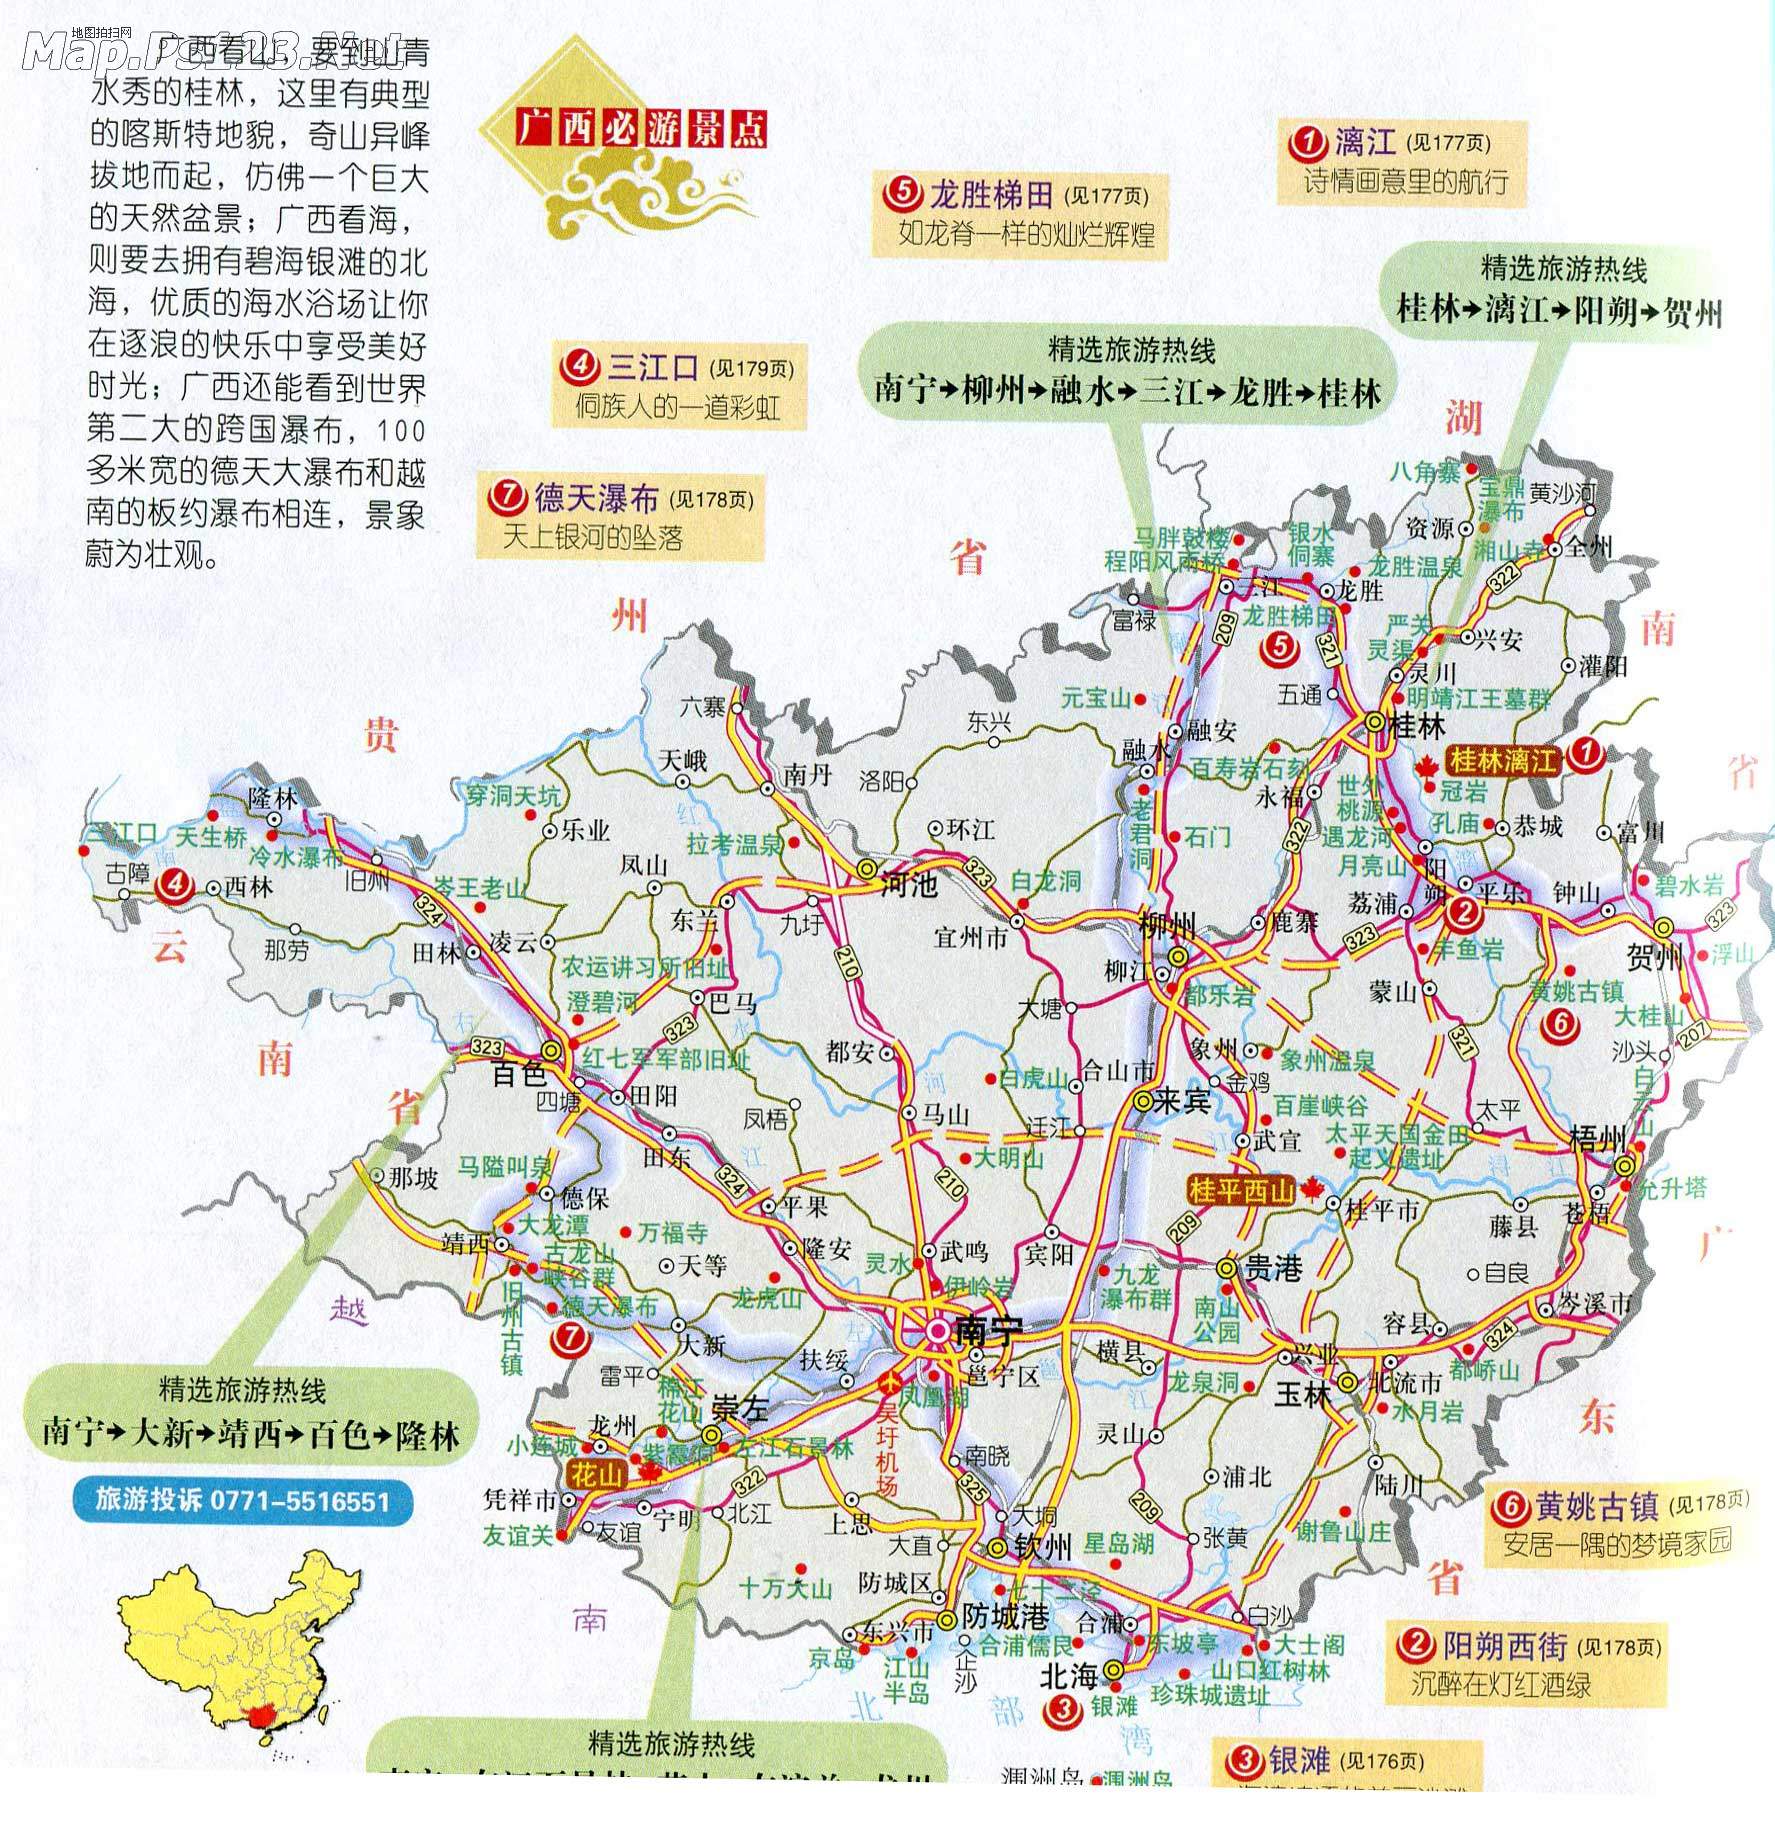 广西旅游地图(必游景点)图片